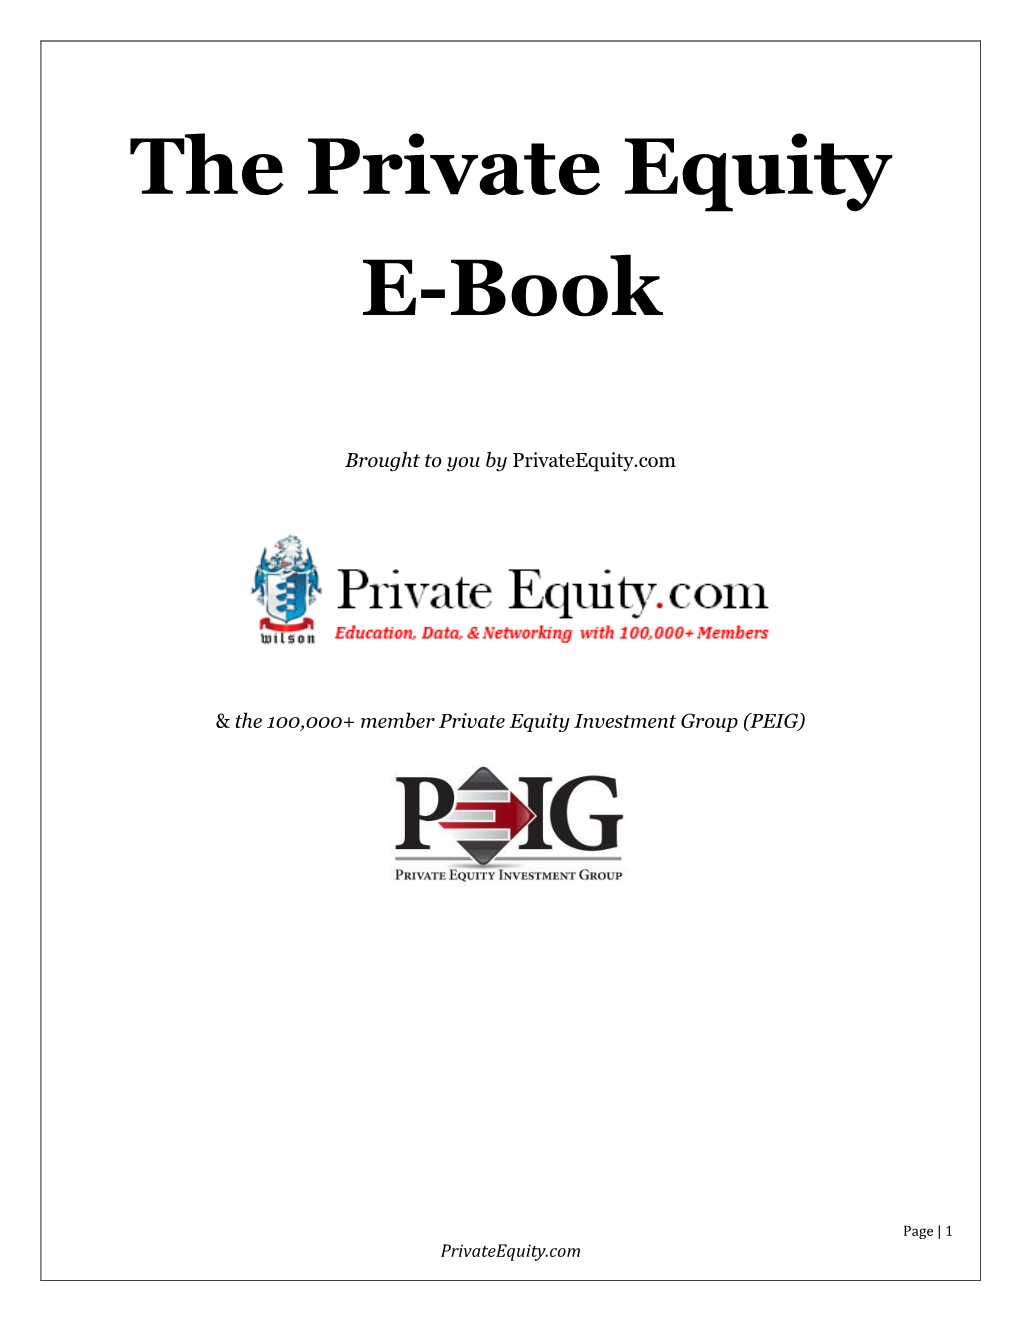 The Private Equity E-Book